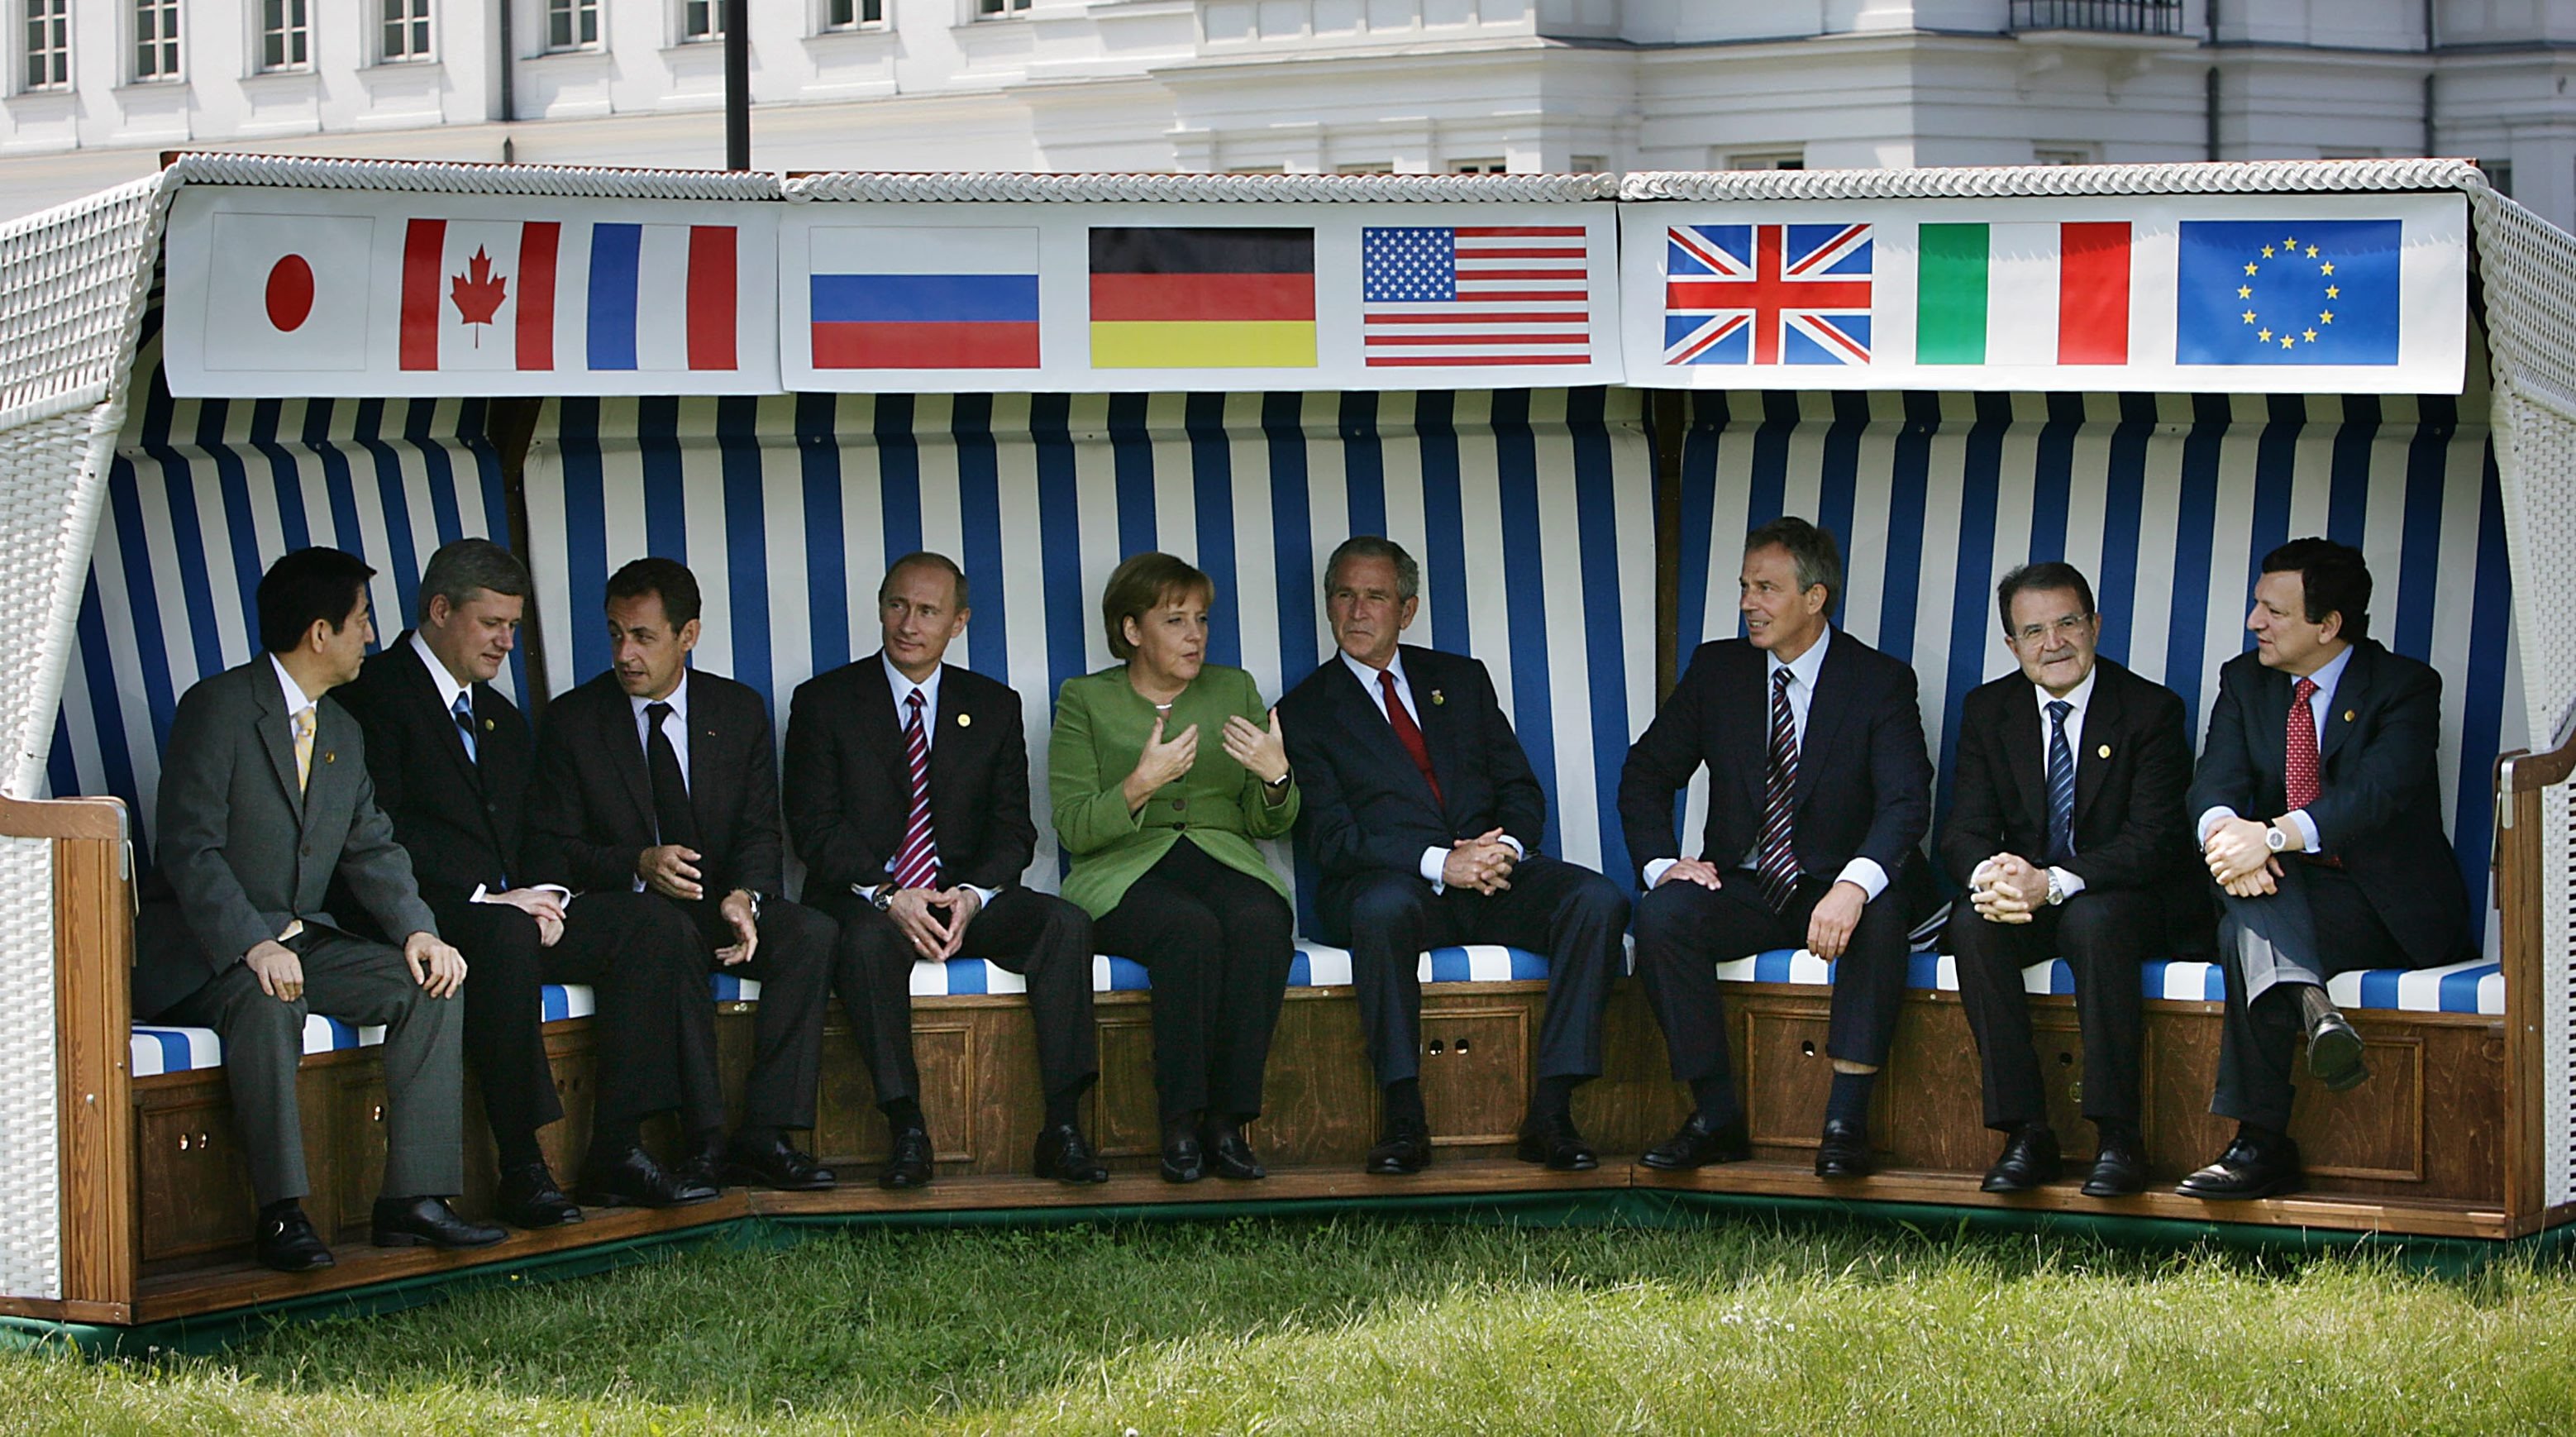 Страны группы 8. Саммит g8 1999. Саммит g8 в Италии 2001. Саммит g7 2007. Саммит g8 в США 2003.